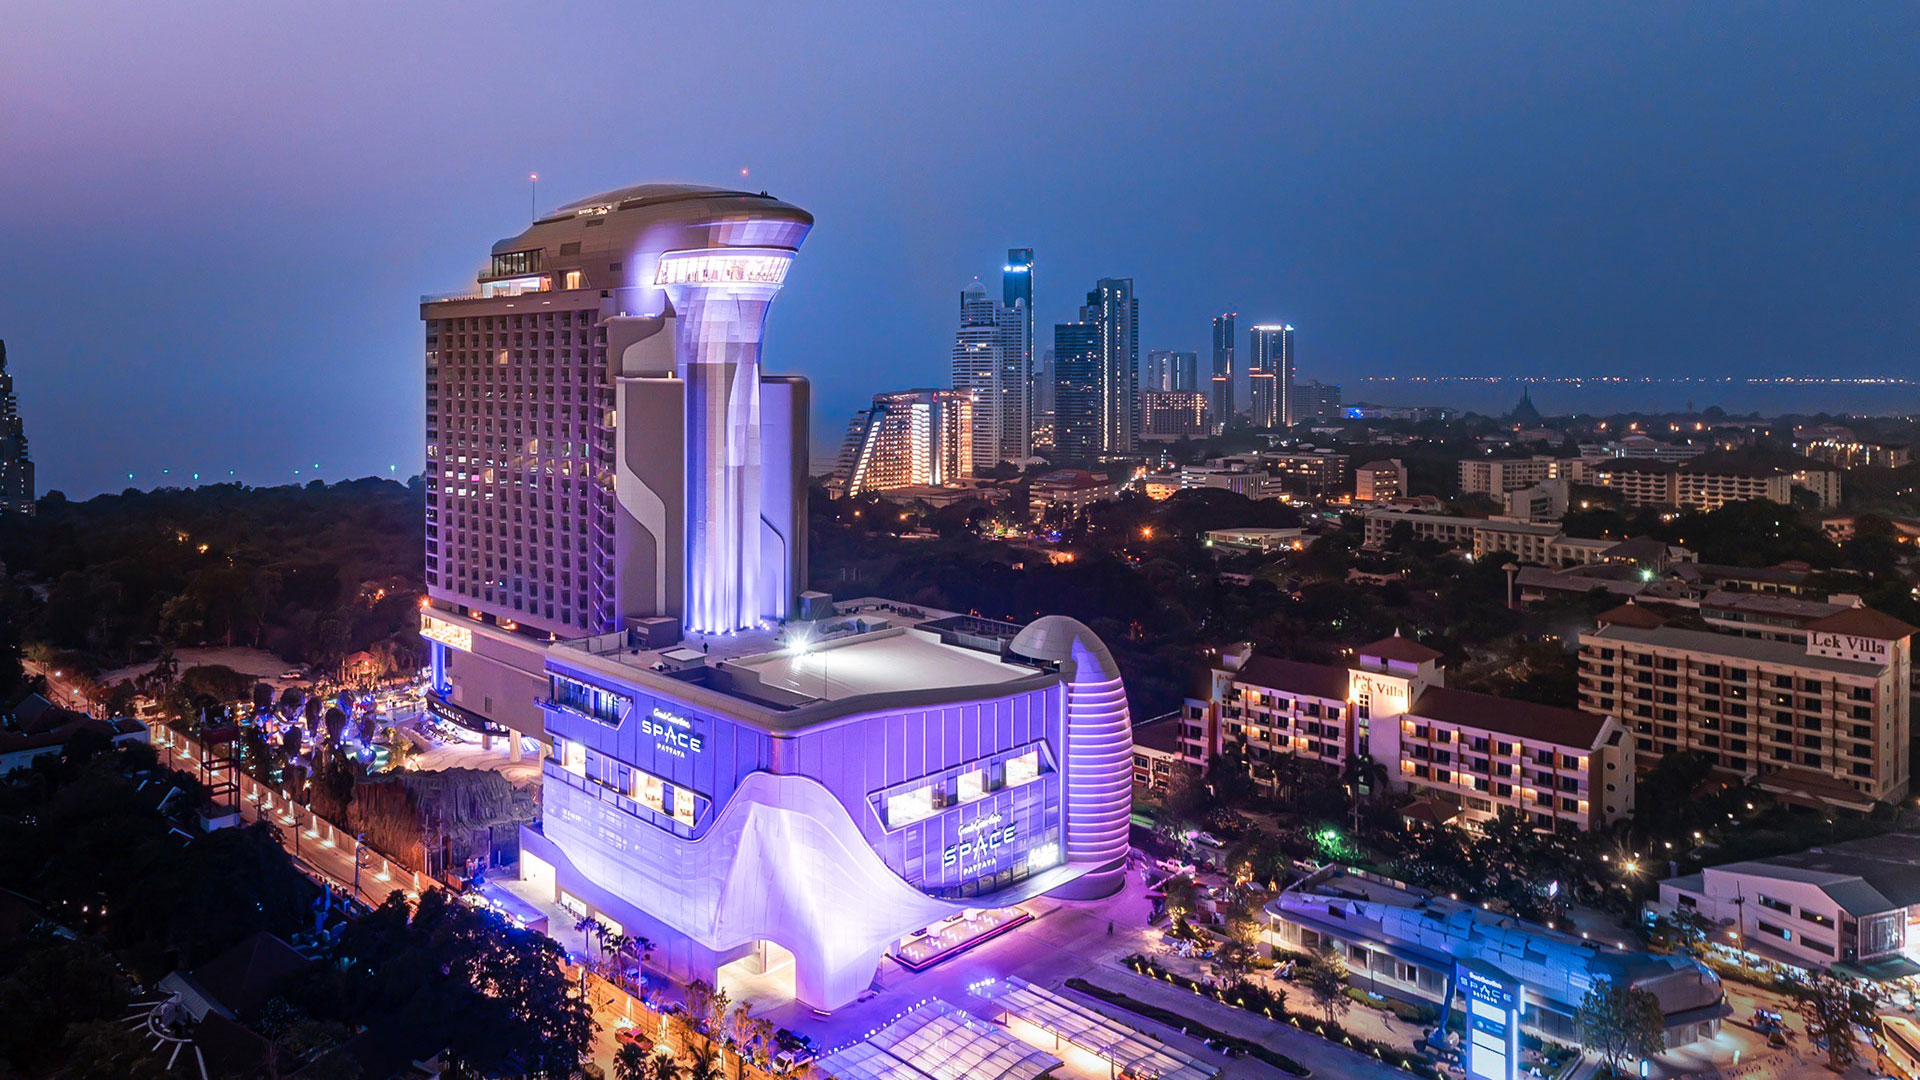 hotels в тайланде